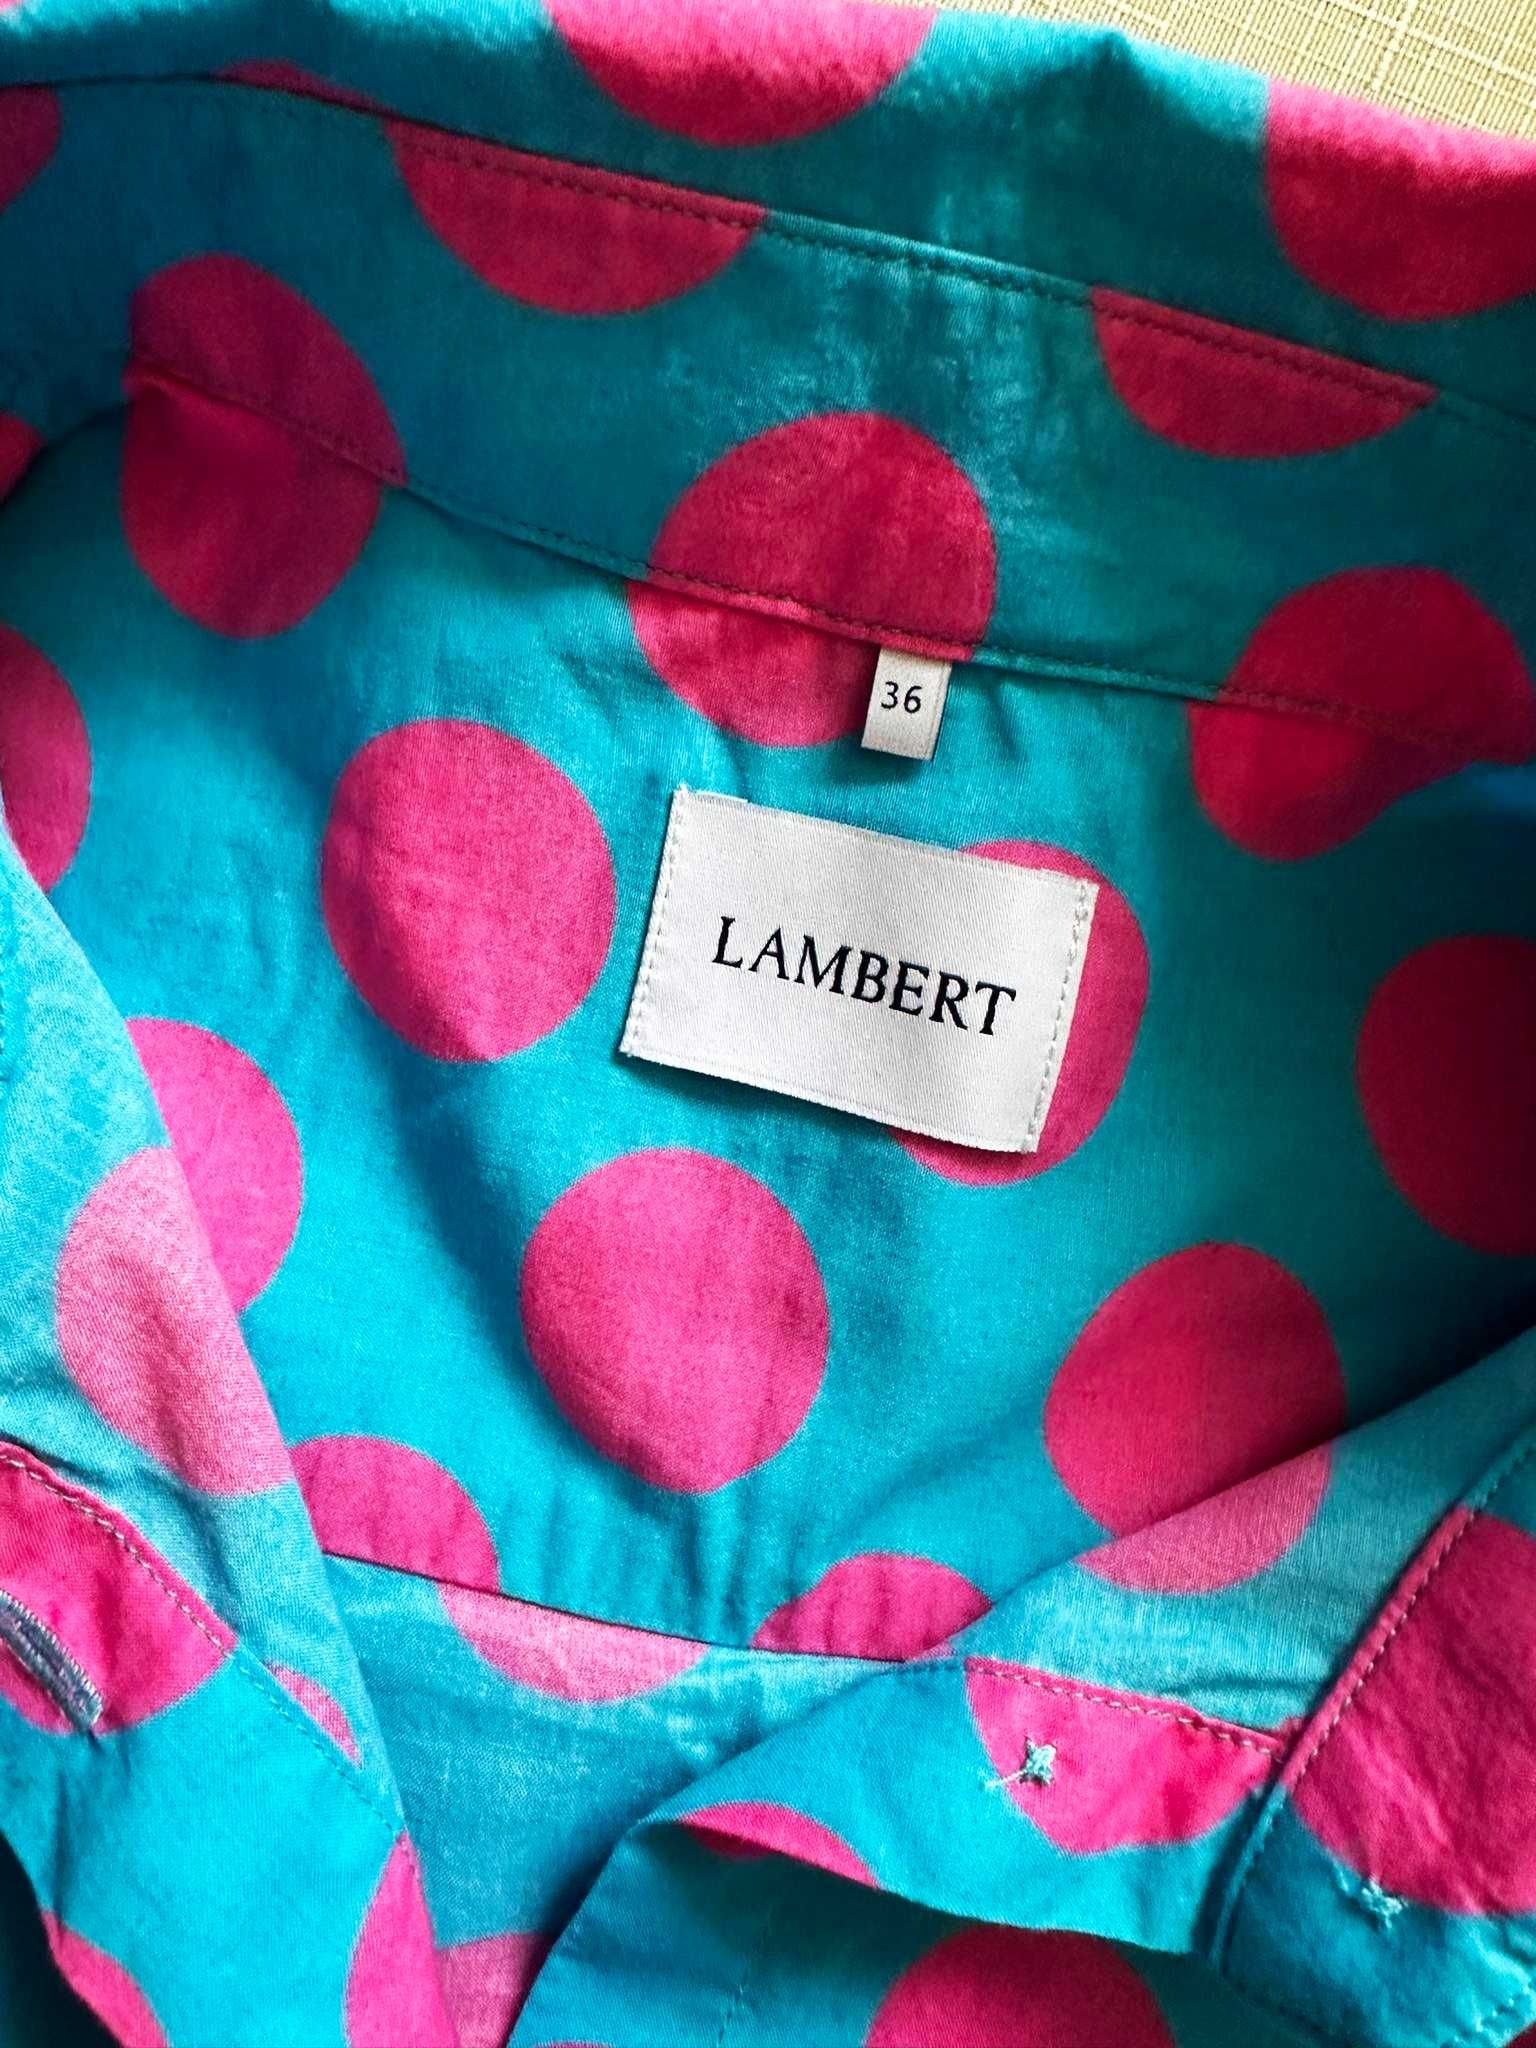 Wólczanka Lambert bawełniana piękna koszula grochy 36 S